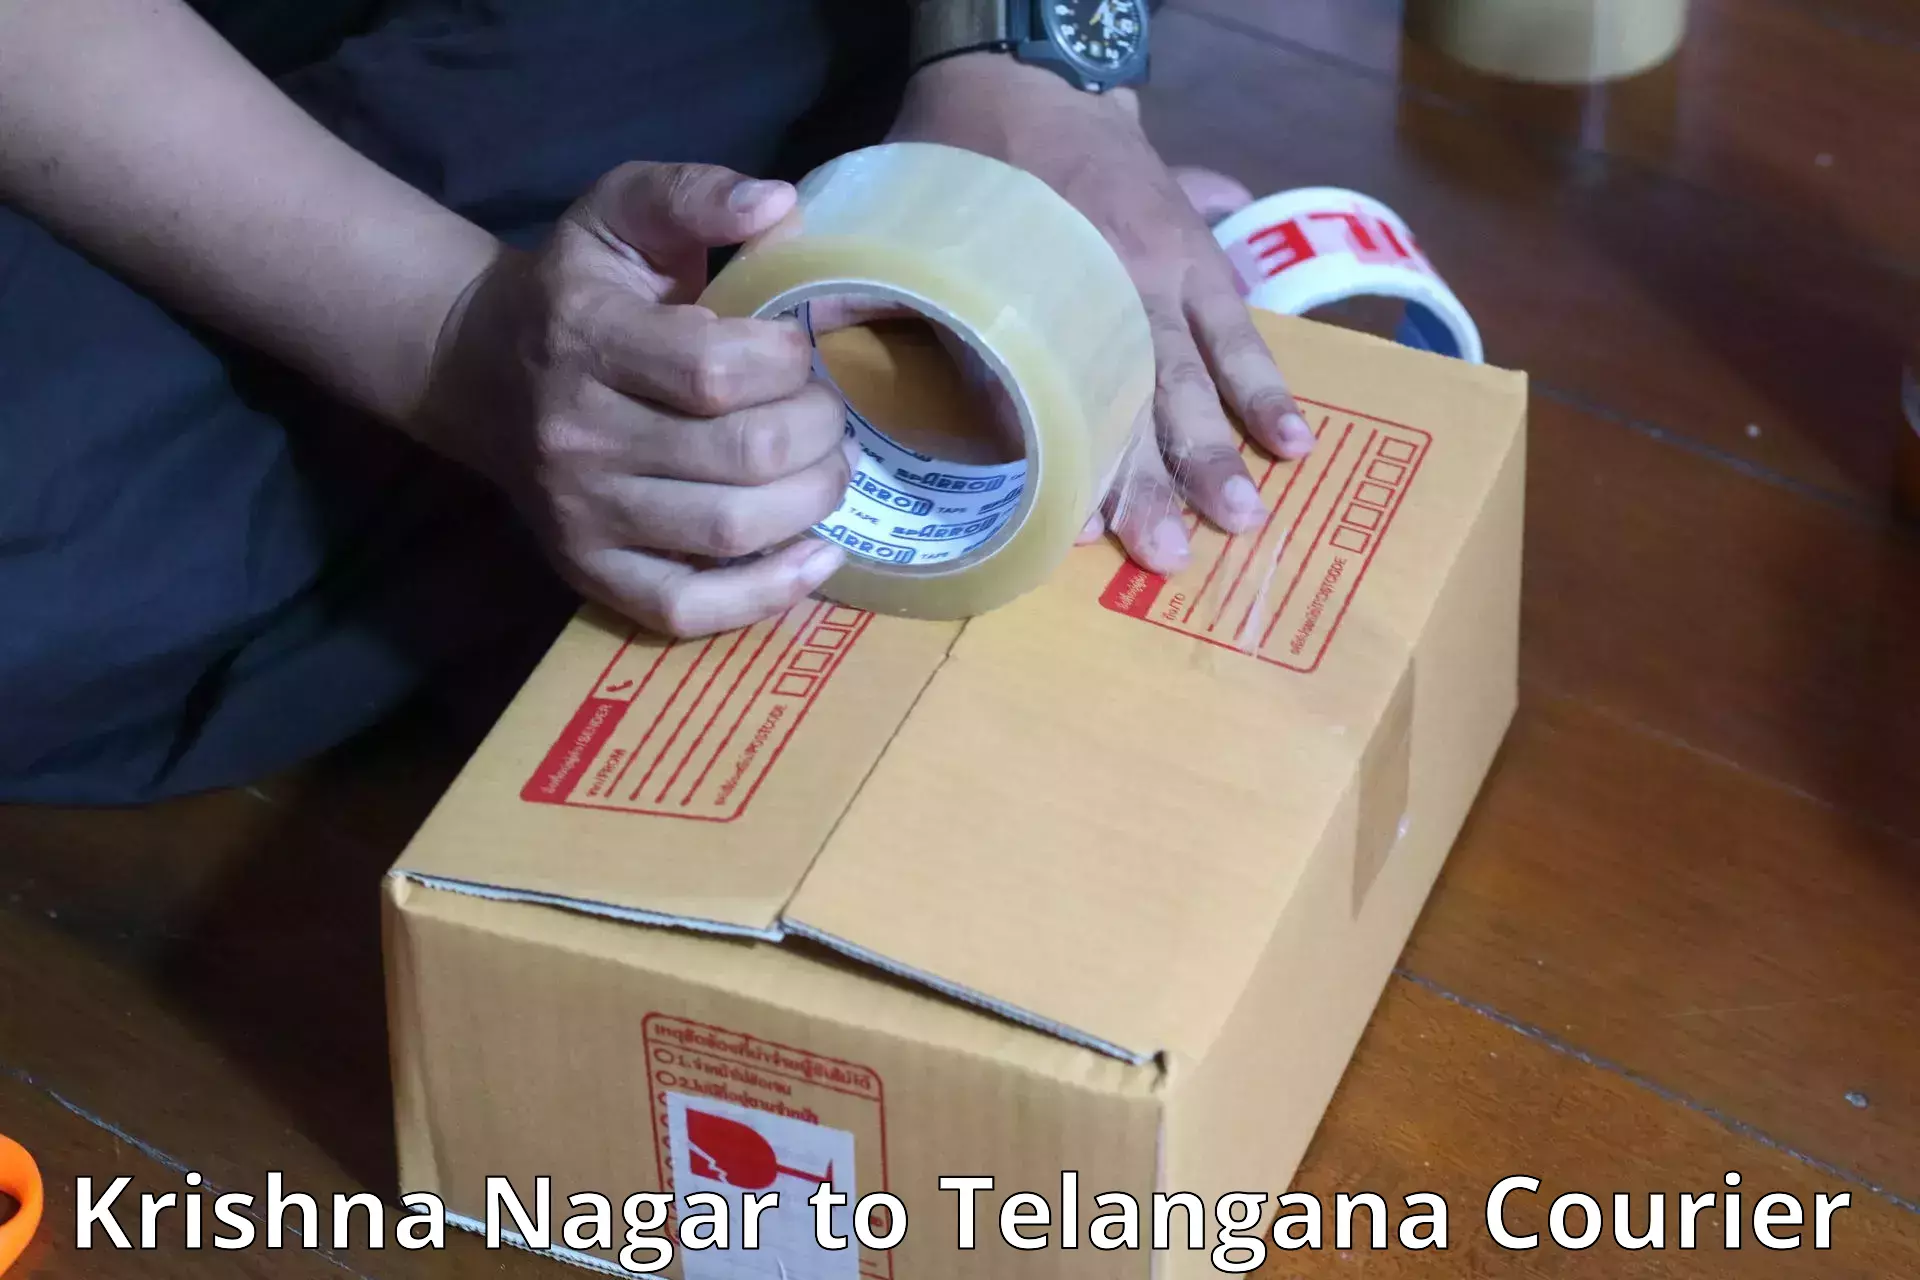 Baggage shipping advice Krishna Nagar to Dahegaon